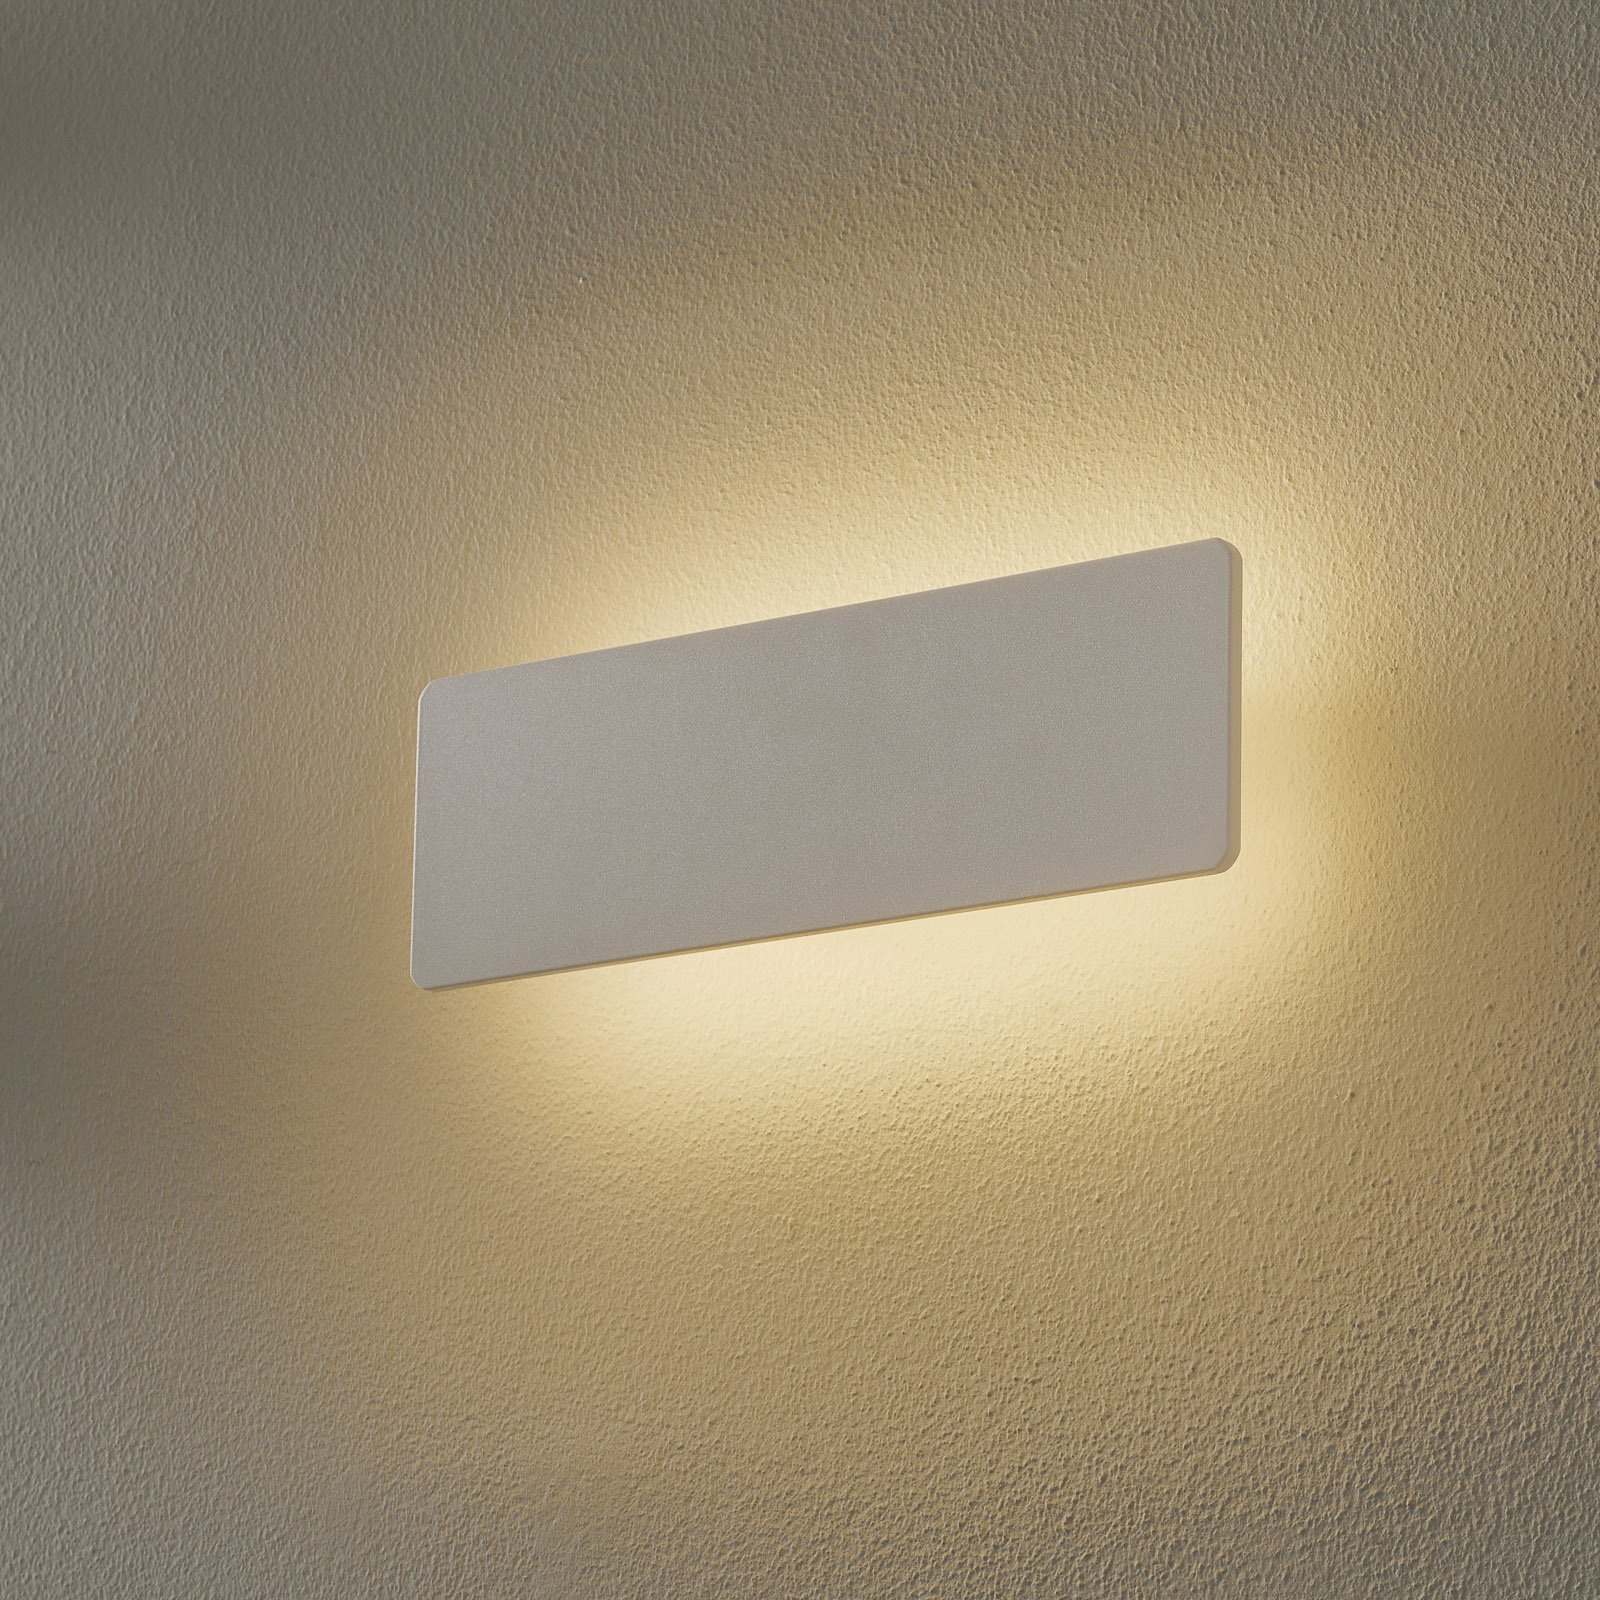 LED-vägglampa Zig Zag vit, bredd 29 cm